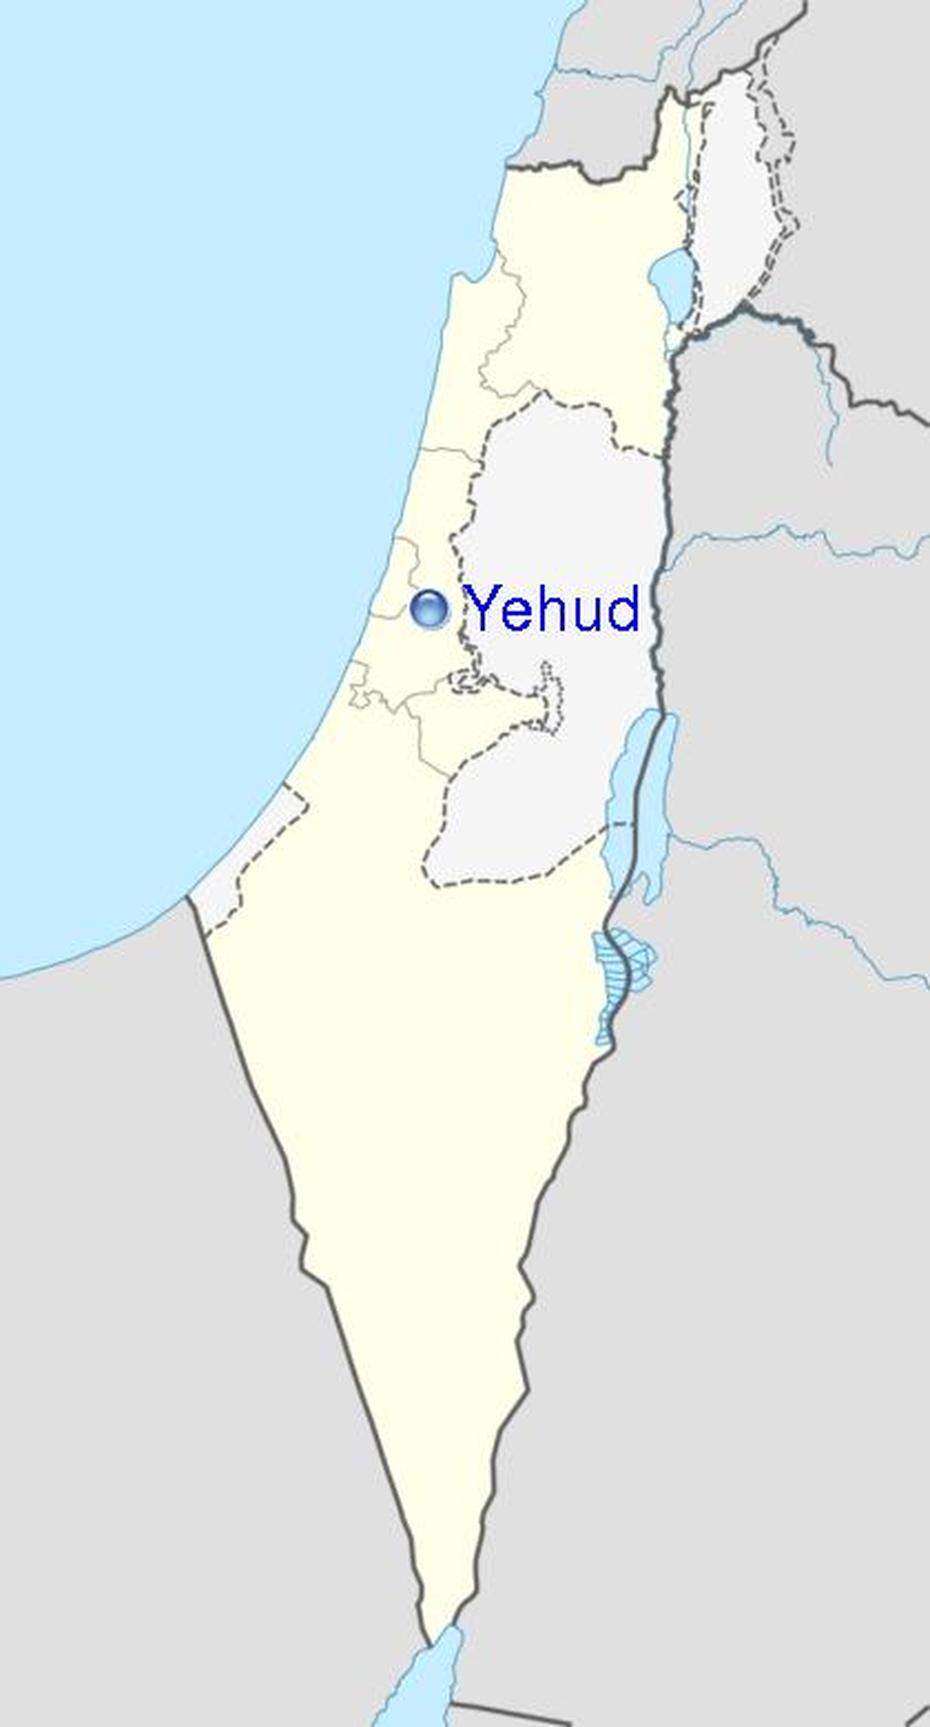 Yehud Phone Book – From Israelpb, Yehud, Israel, Yahwism, Gerah